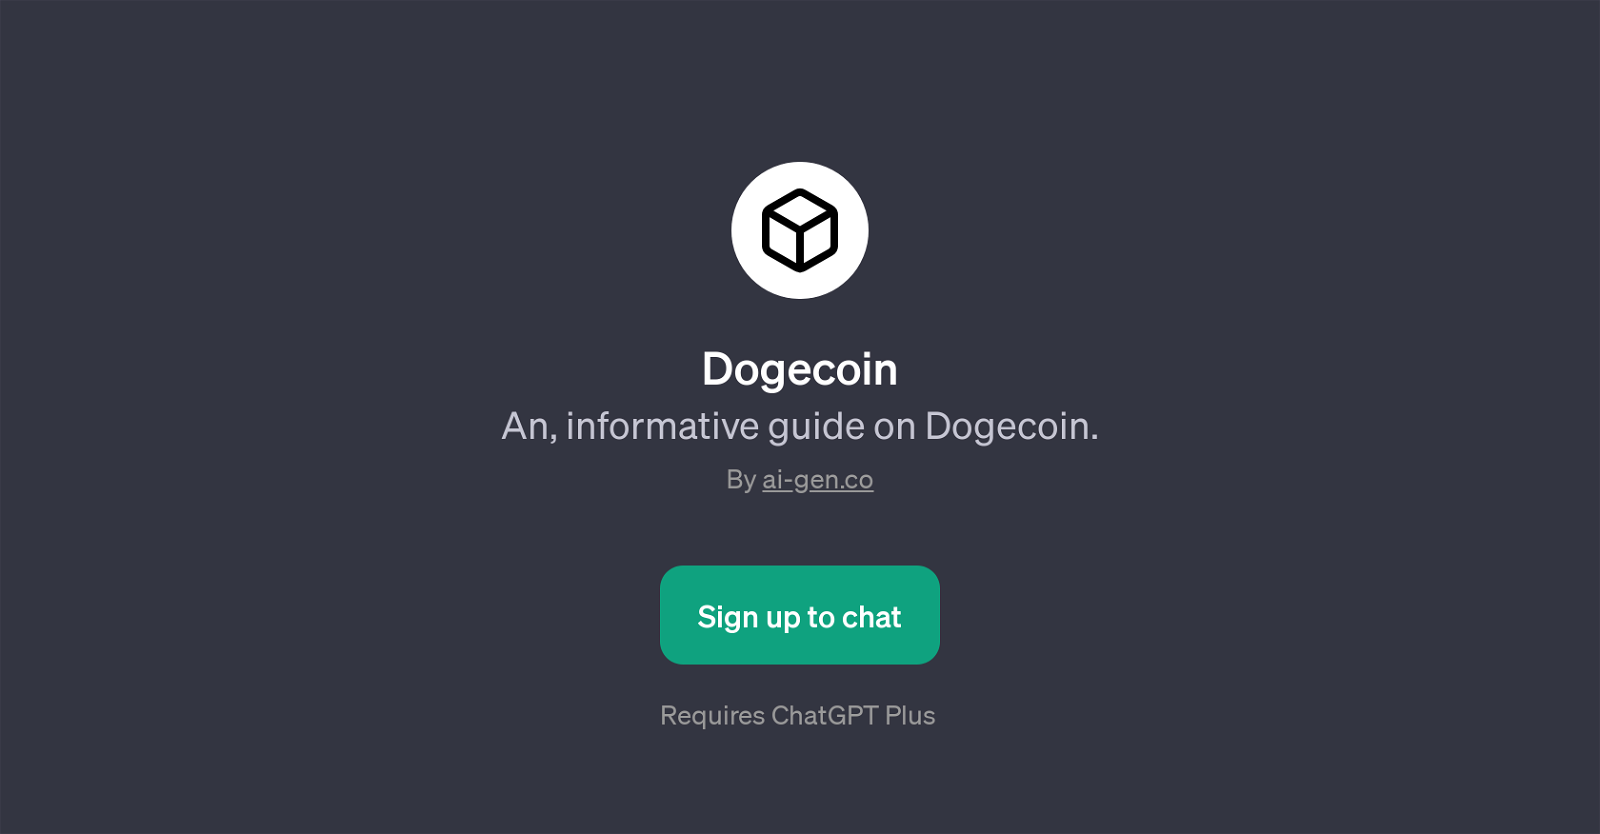 Dogecoin website